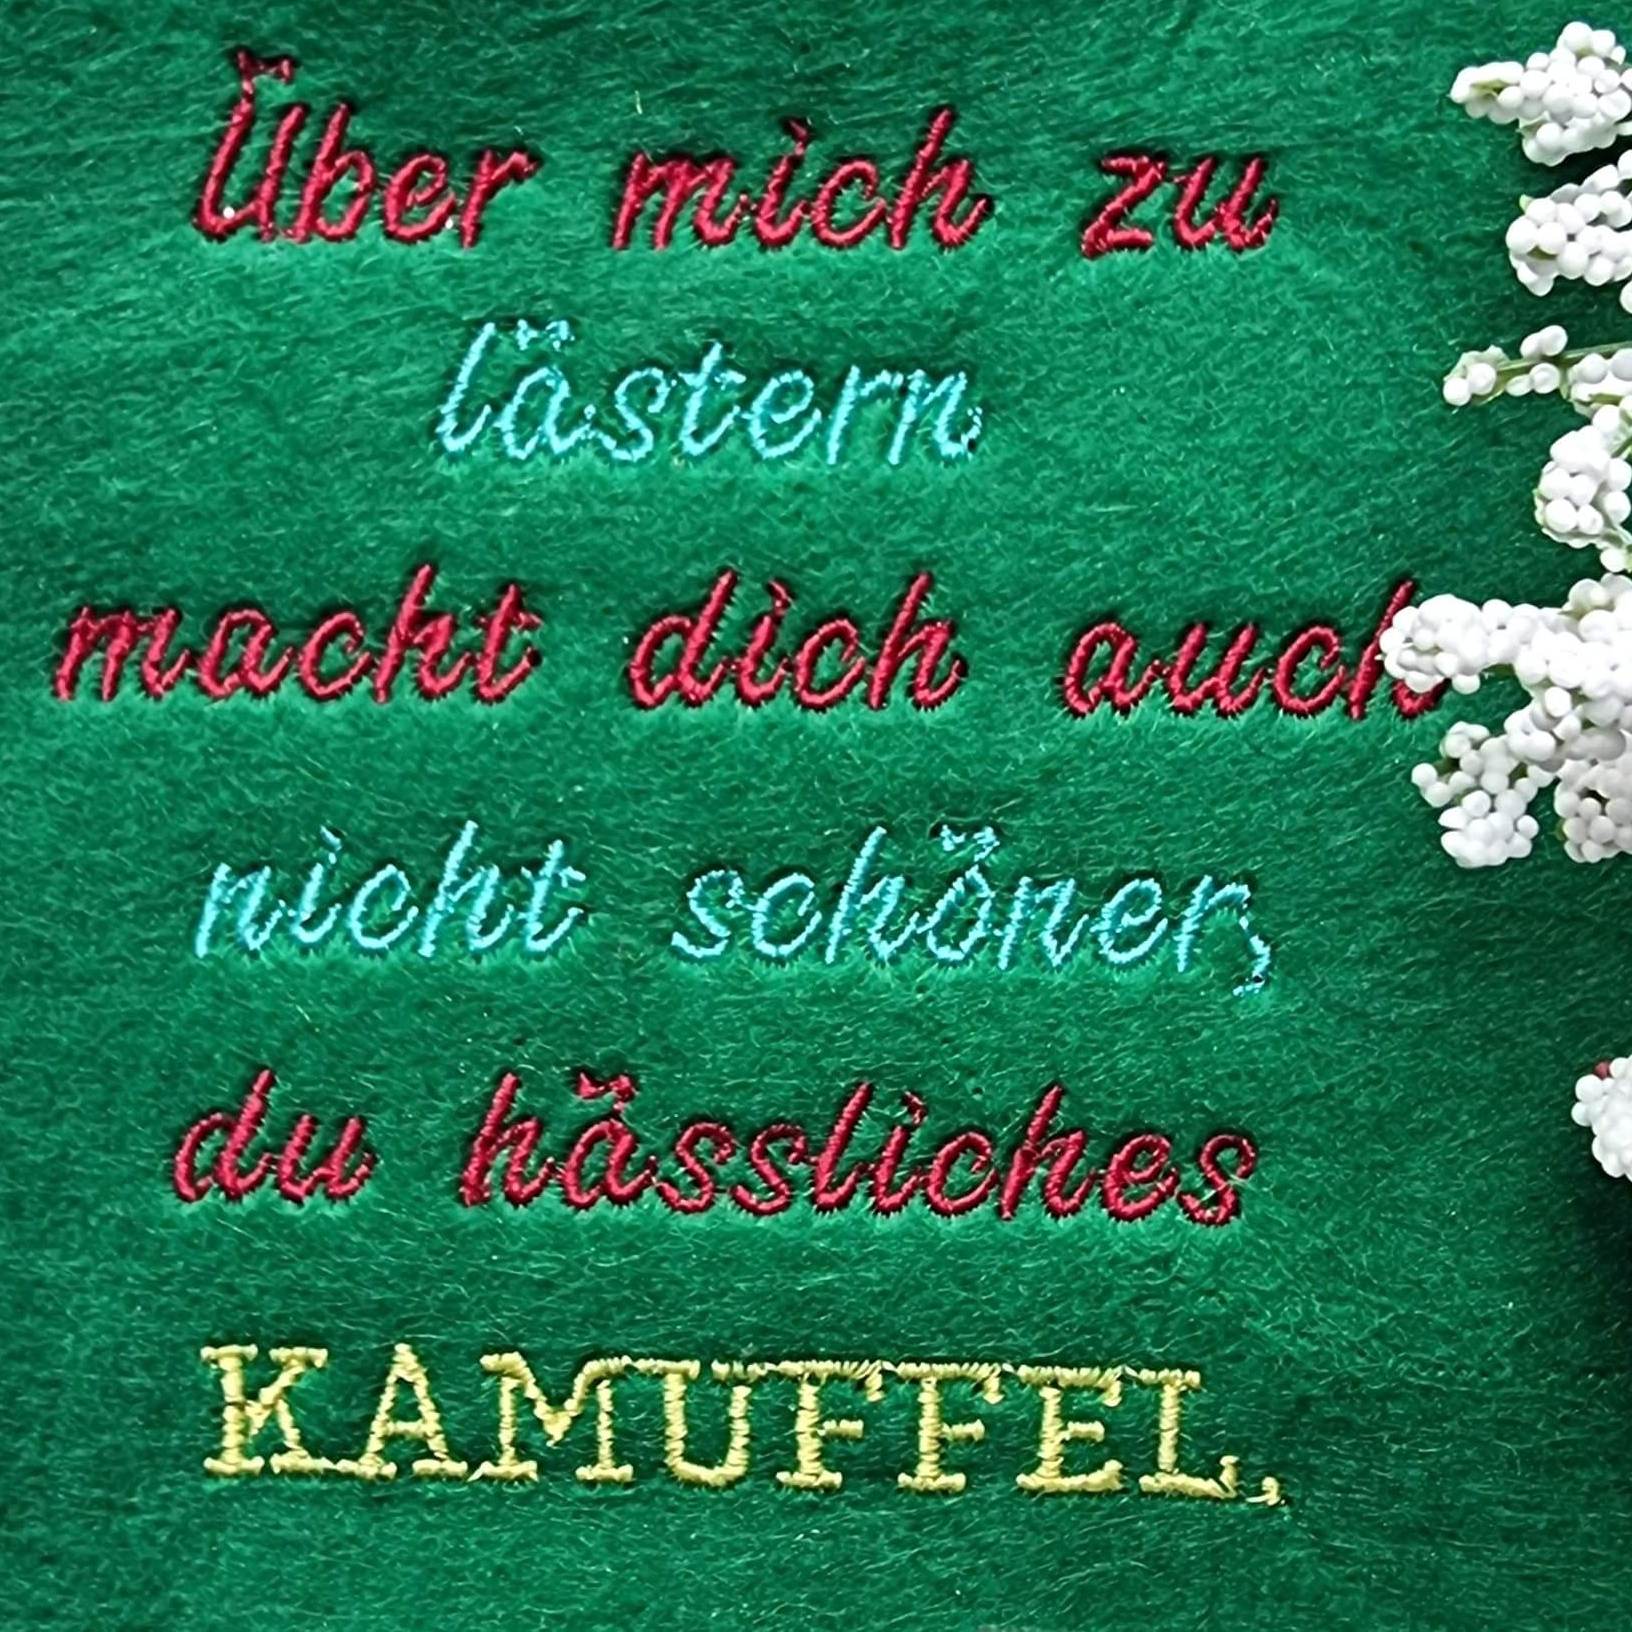 Stickdatei Sprüche Spruch Kamuffel von stiXXie by lajana